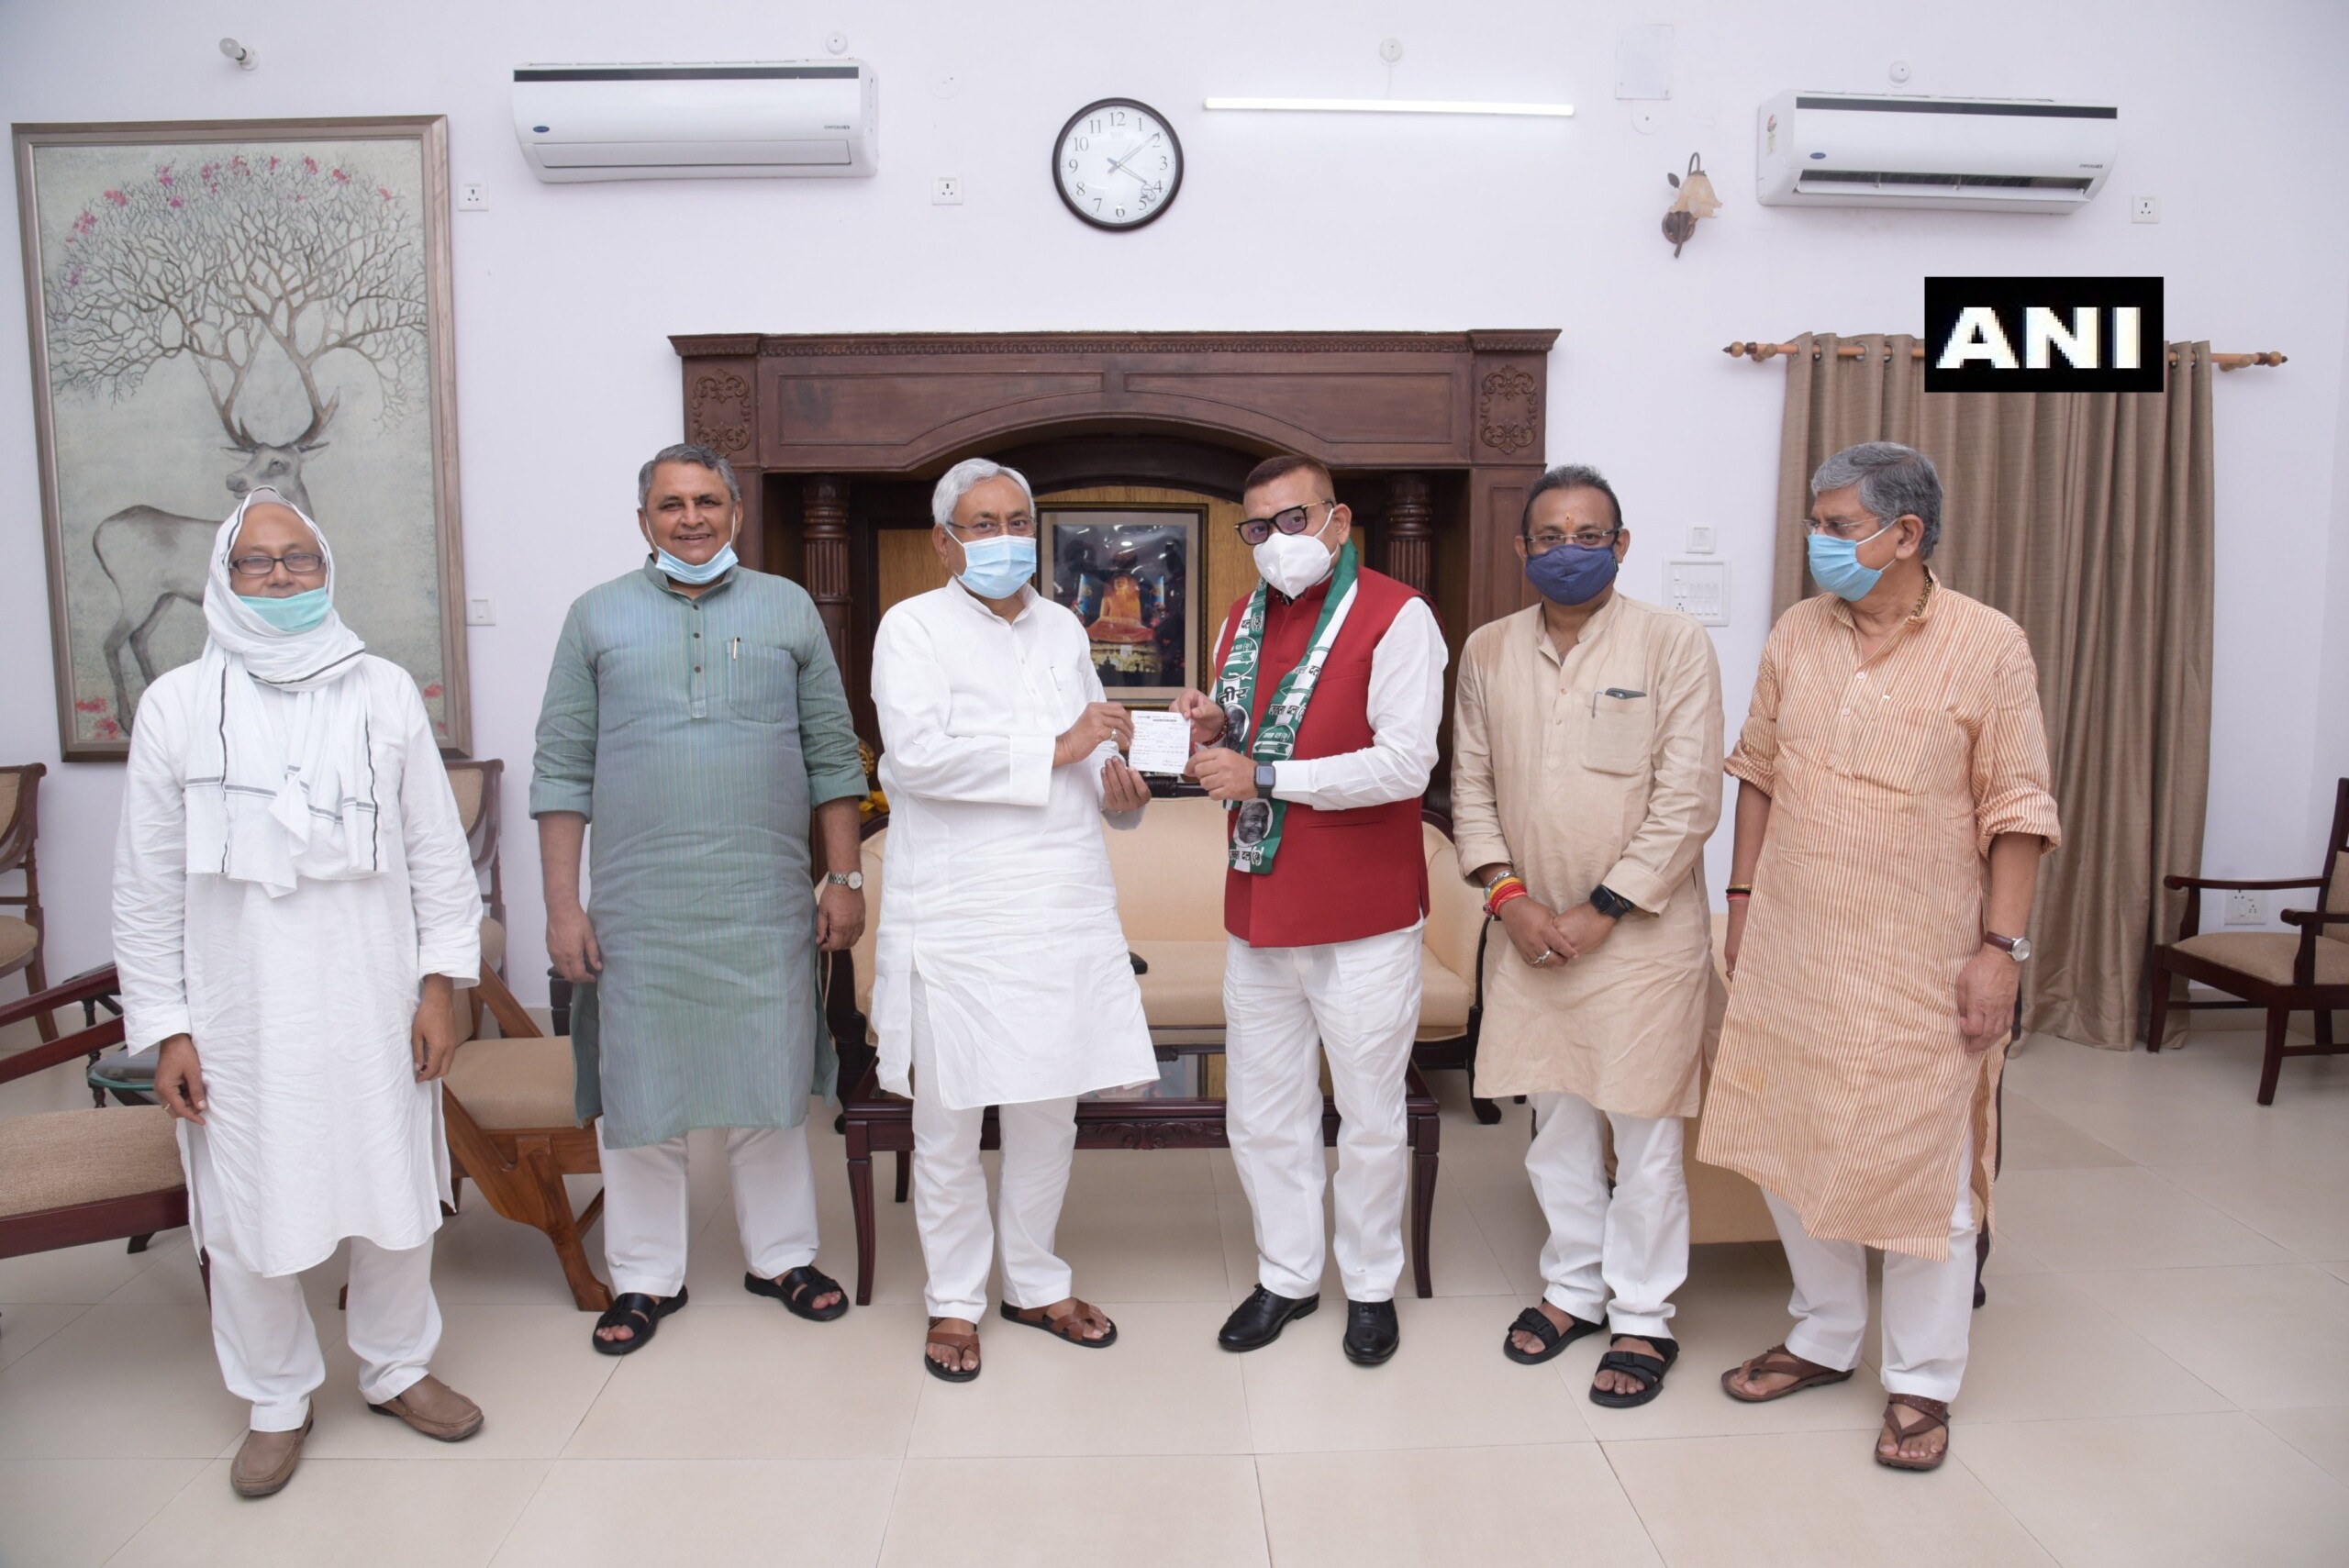 सुशांत सिंह राजपूत मामले से चर्चा में आये बिहार के पूर्व डीजीपी गुप्तेश्वर पांडे JDU में हुए शामिल